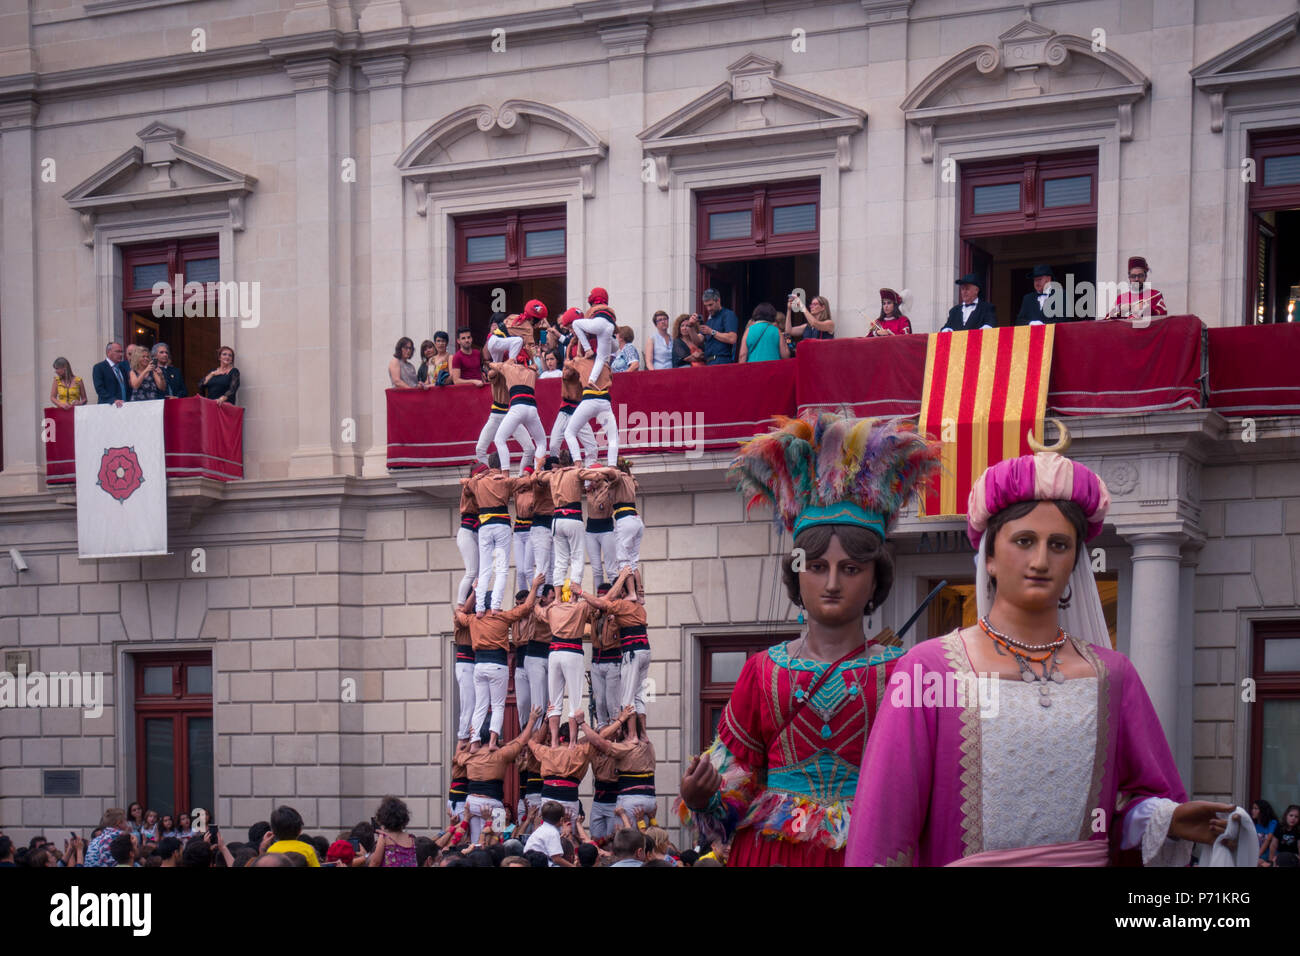 Reus, Espagne. Juin 2018 : Castells Performance avec Gegants géants ou la danse, fête traditionnelle en Catalogne. Banque D'Images